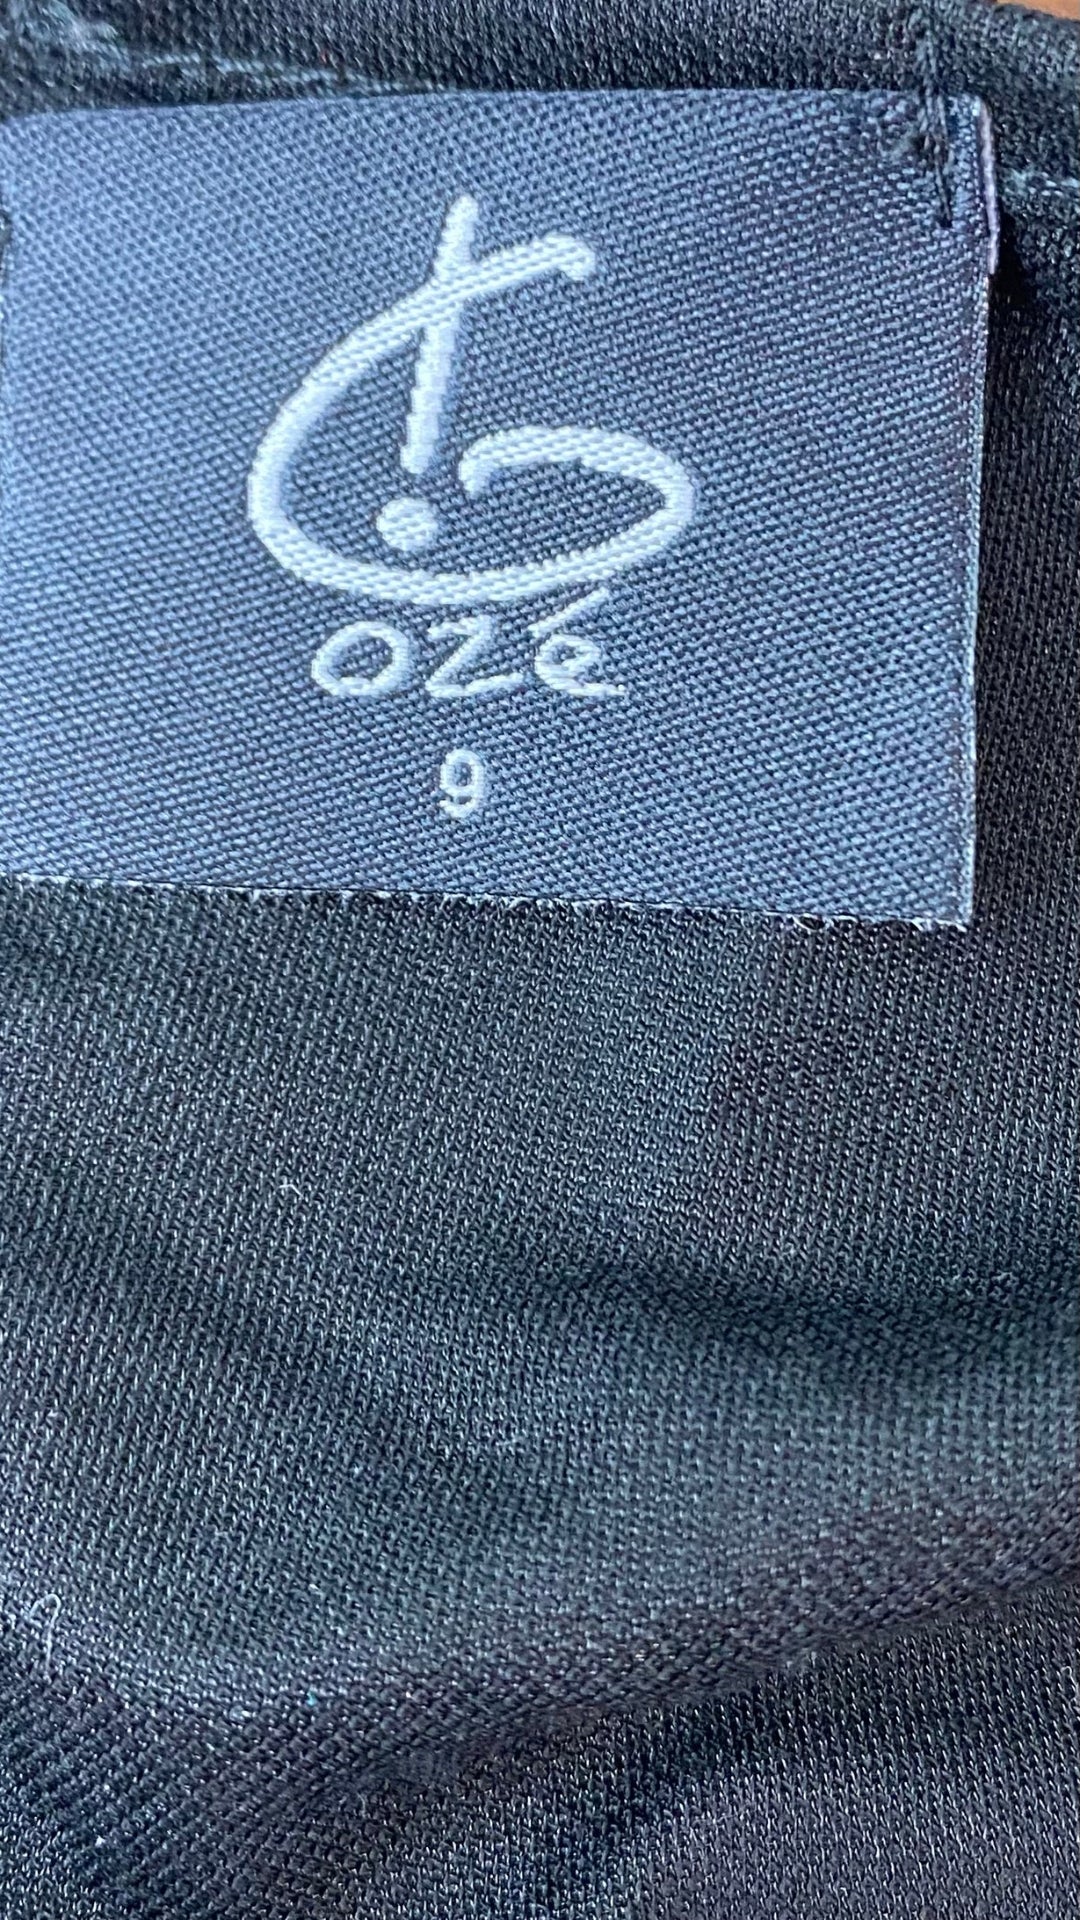 Tunique noire avec poches G!ozé, taille 5xl-6xl. Vue de l'étiquette de marque.